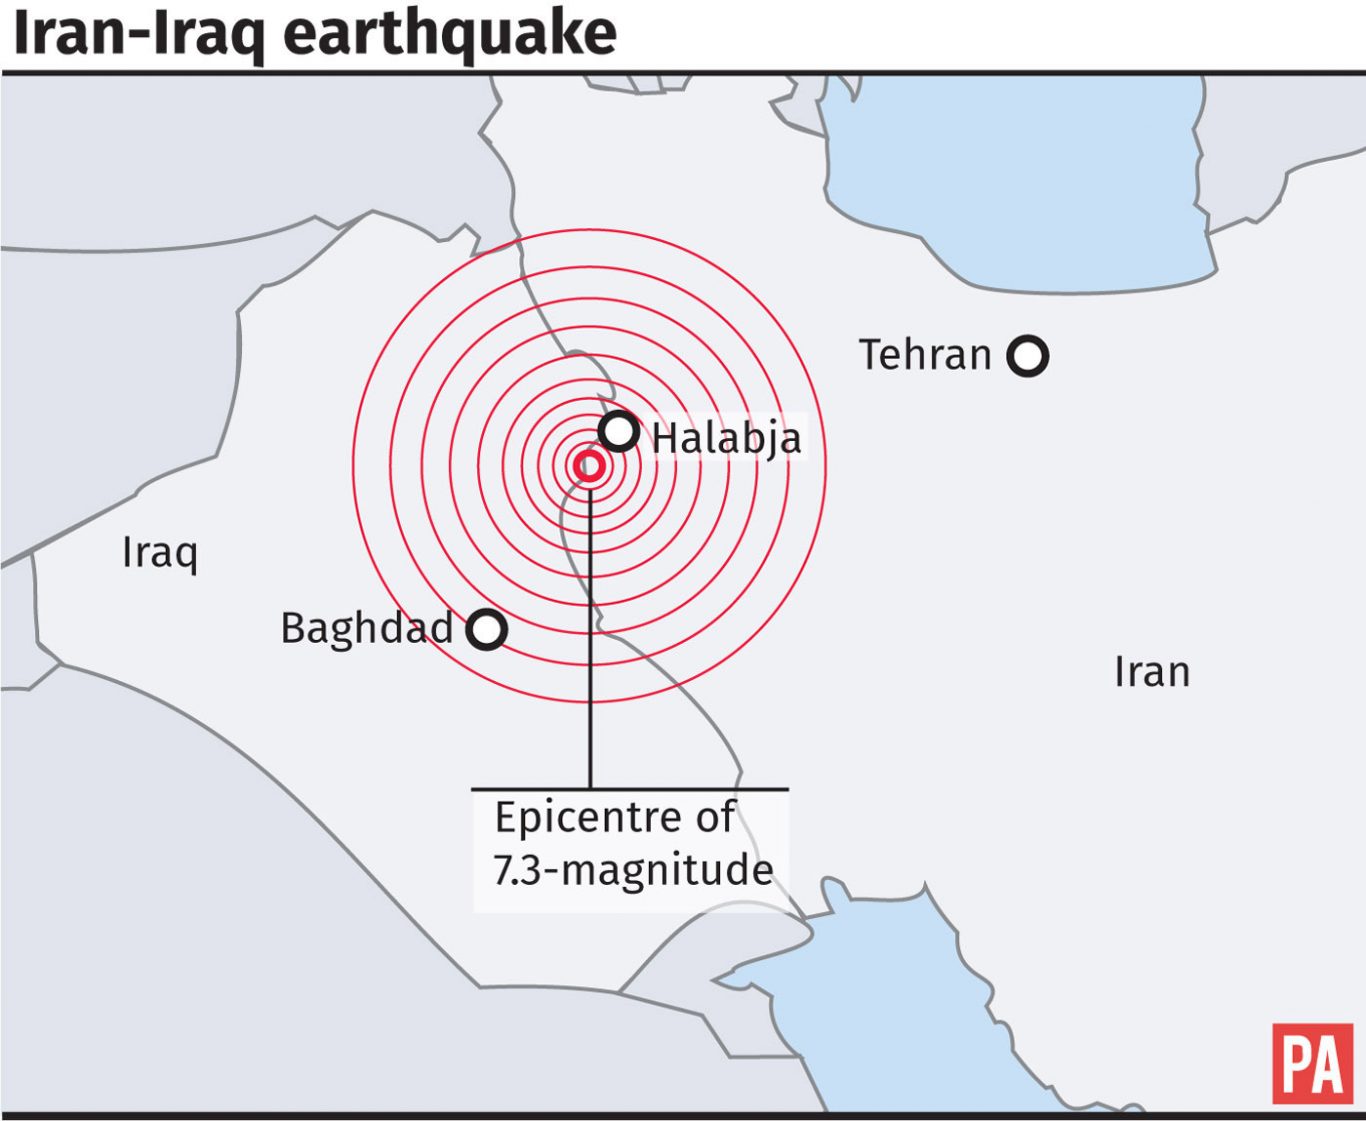 Graphic locates epicentre of 7.3-magnitude earthquake on the border of Iran and Iraq